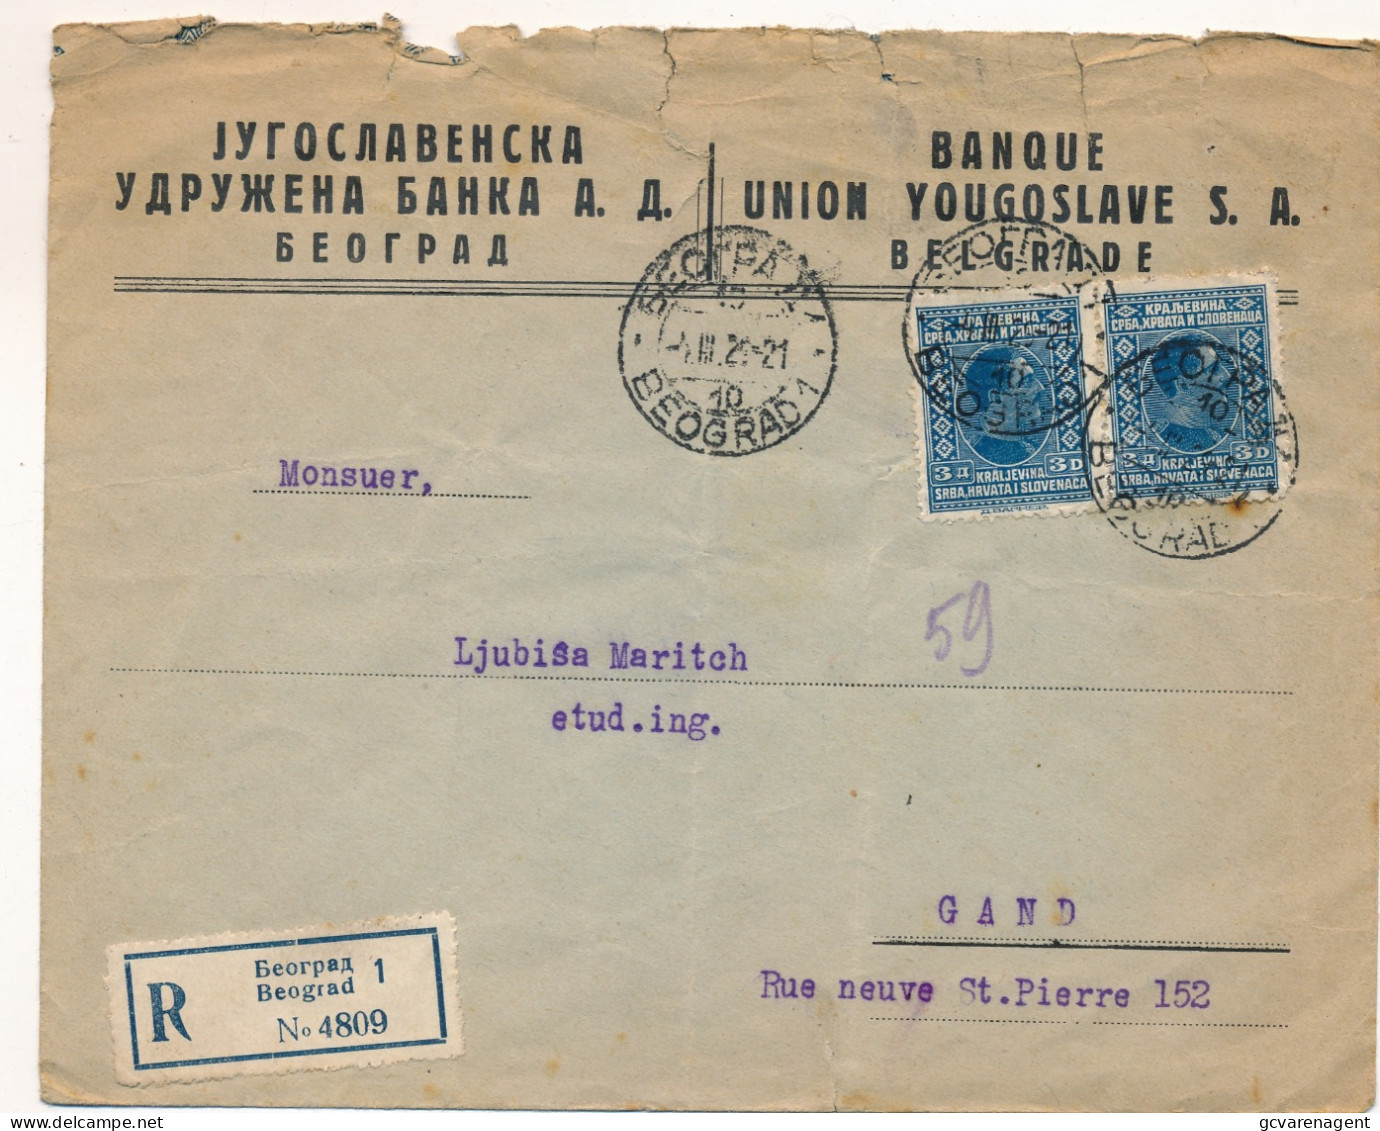 ENVELOPPE 1925 RECOMMANDE BEOGRAD - GAND   BANQUE UNION YOUGOSLAVE S.1. BELGRADE   2 SCANS - Storia Postale